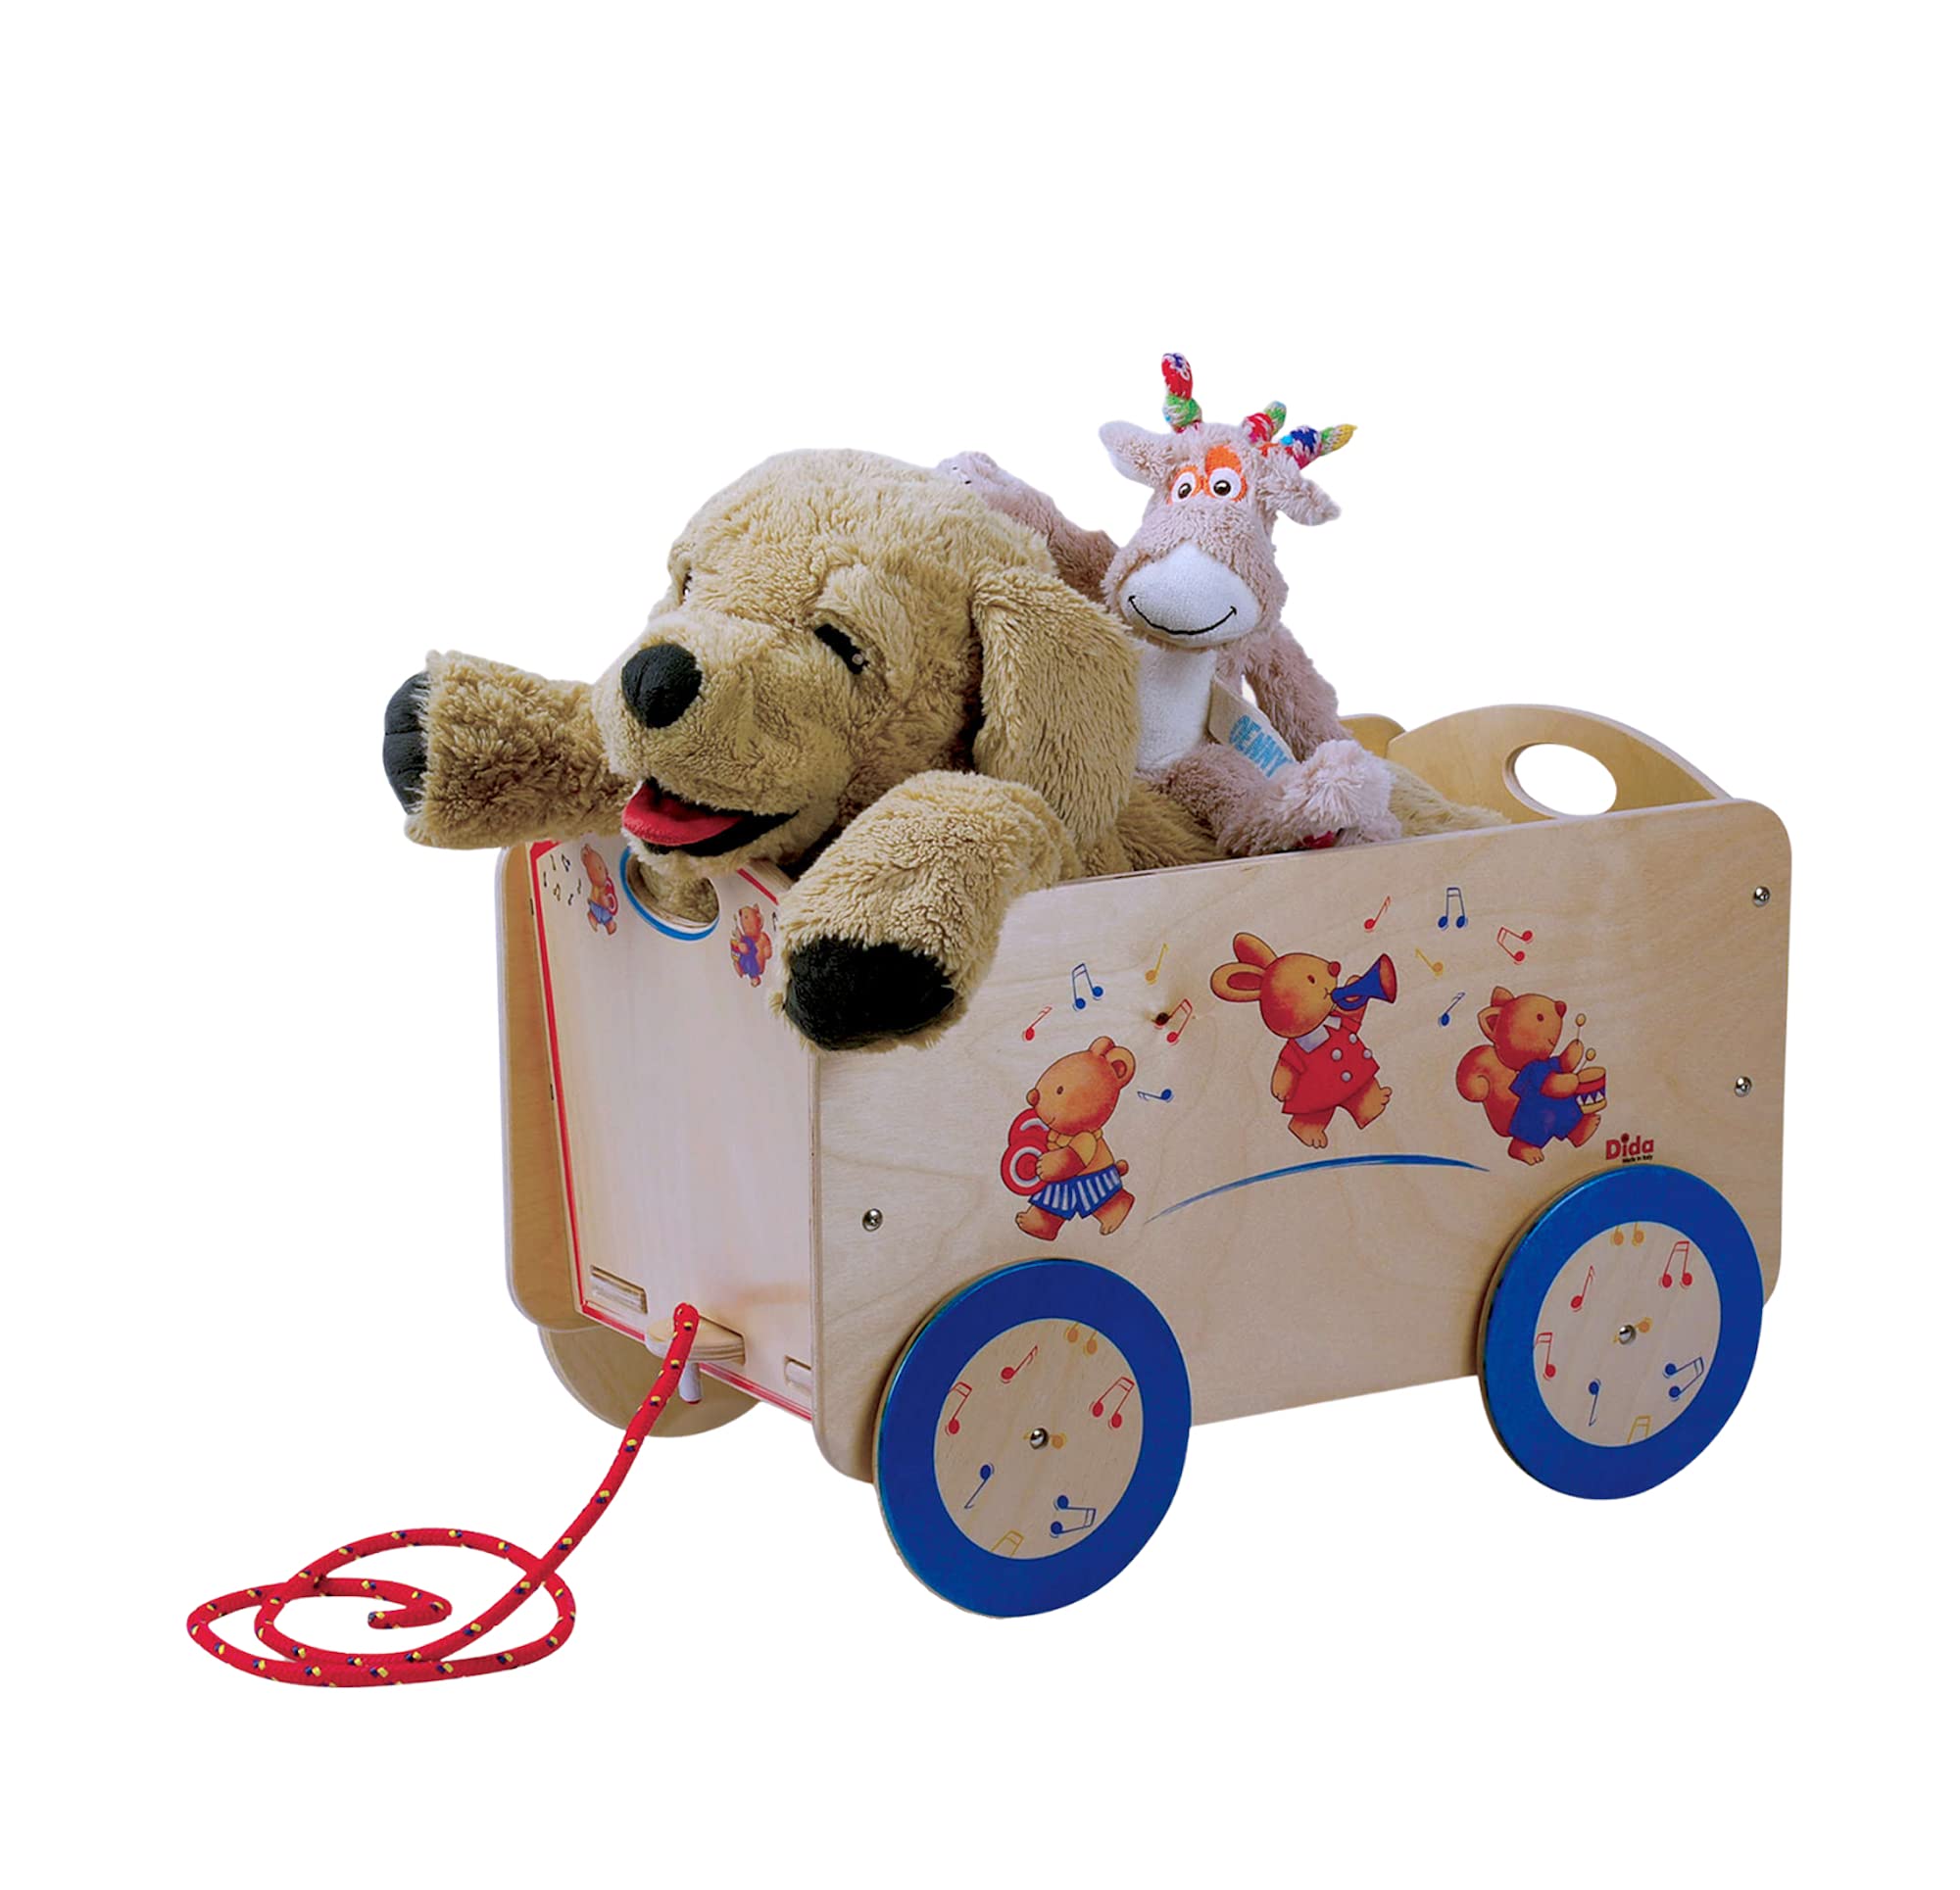 Dida - Holzwagen mit Rädern für Gegenstände und Kinderspielzeug. Dekoration: musizierende Tiere.